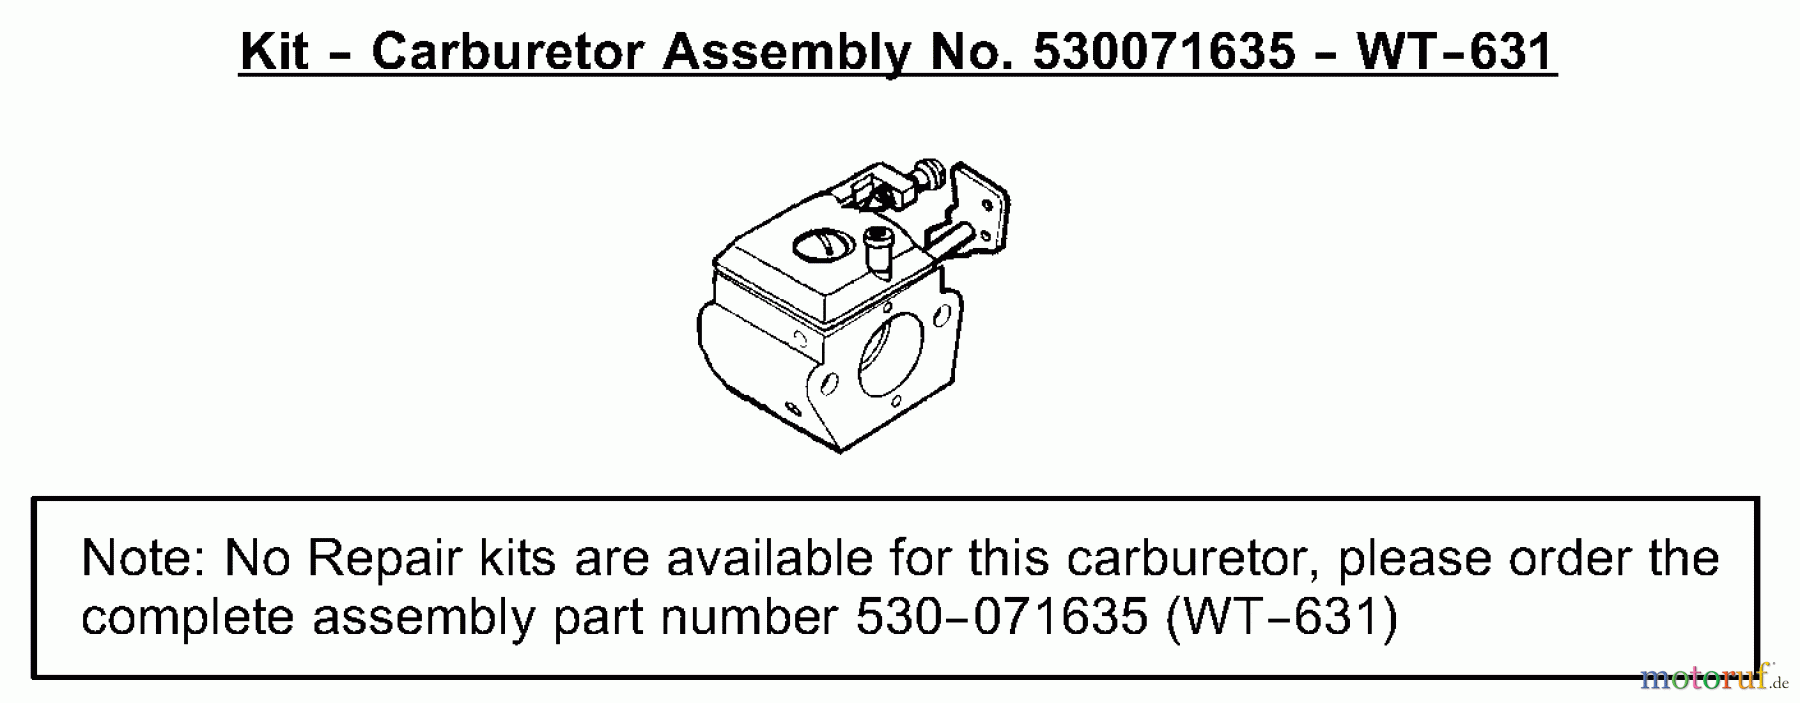  Poulan / Weed Eater Motorsensen, Trimmer SST25 (Type 3) - Weed Eater Featherlite HO String Trimmer Carburetor Assembly (WT-631) P/N 530071635